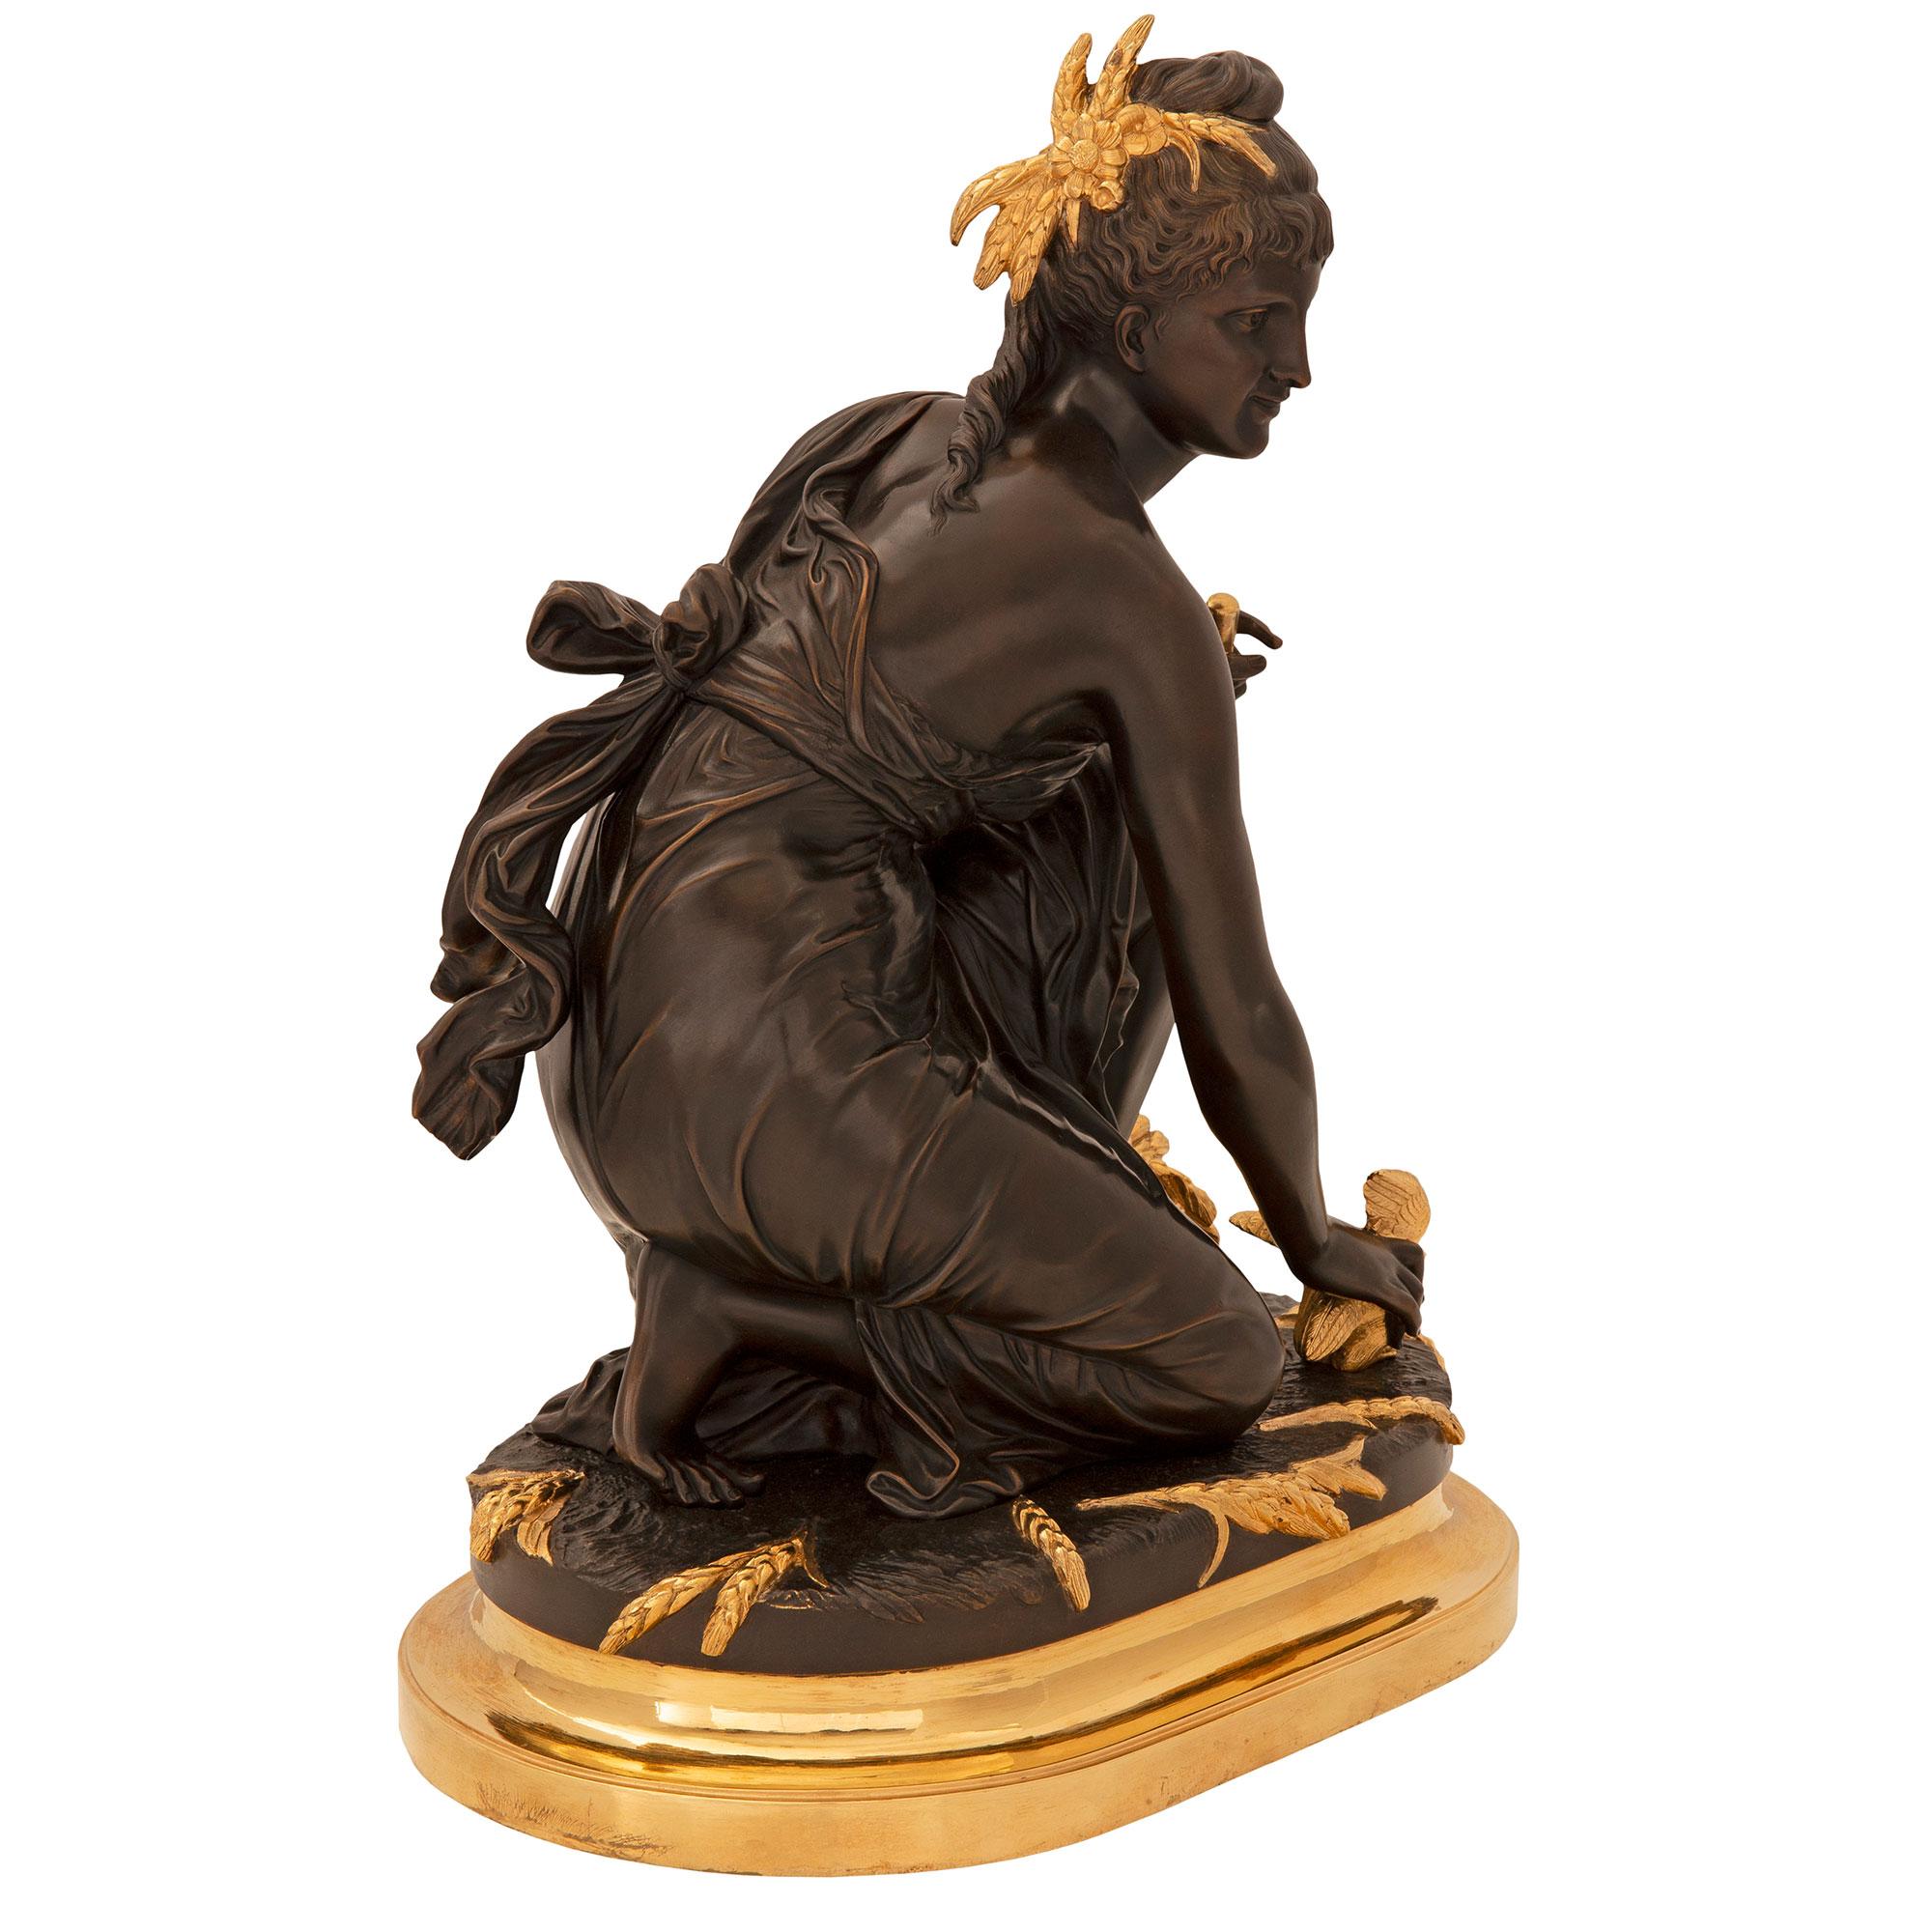 Statue de style Louis XVI du 19ème siècle en bronze doré et patiné, signée E. Laurent. La statue est surélevée par une élégante base en bronze doré de forme oblongue avec une fine bordure mouchetée. Au-dessus se trouve une belle jeune fille